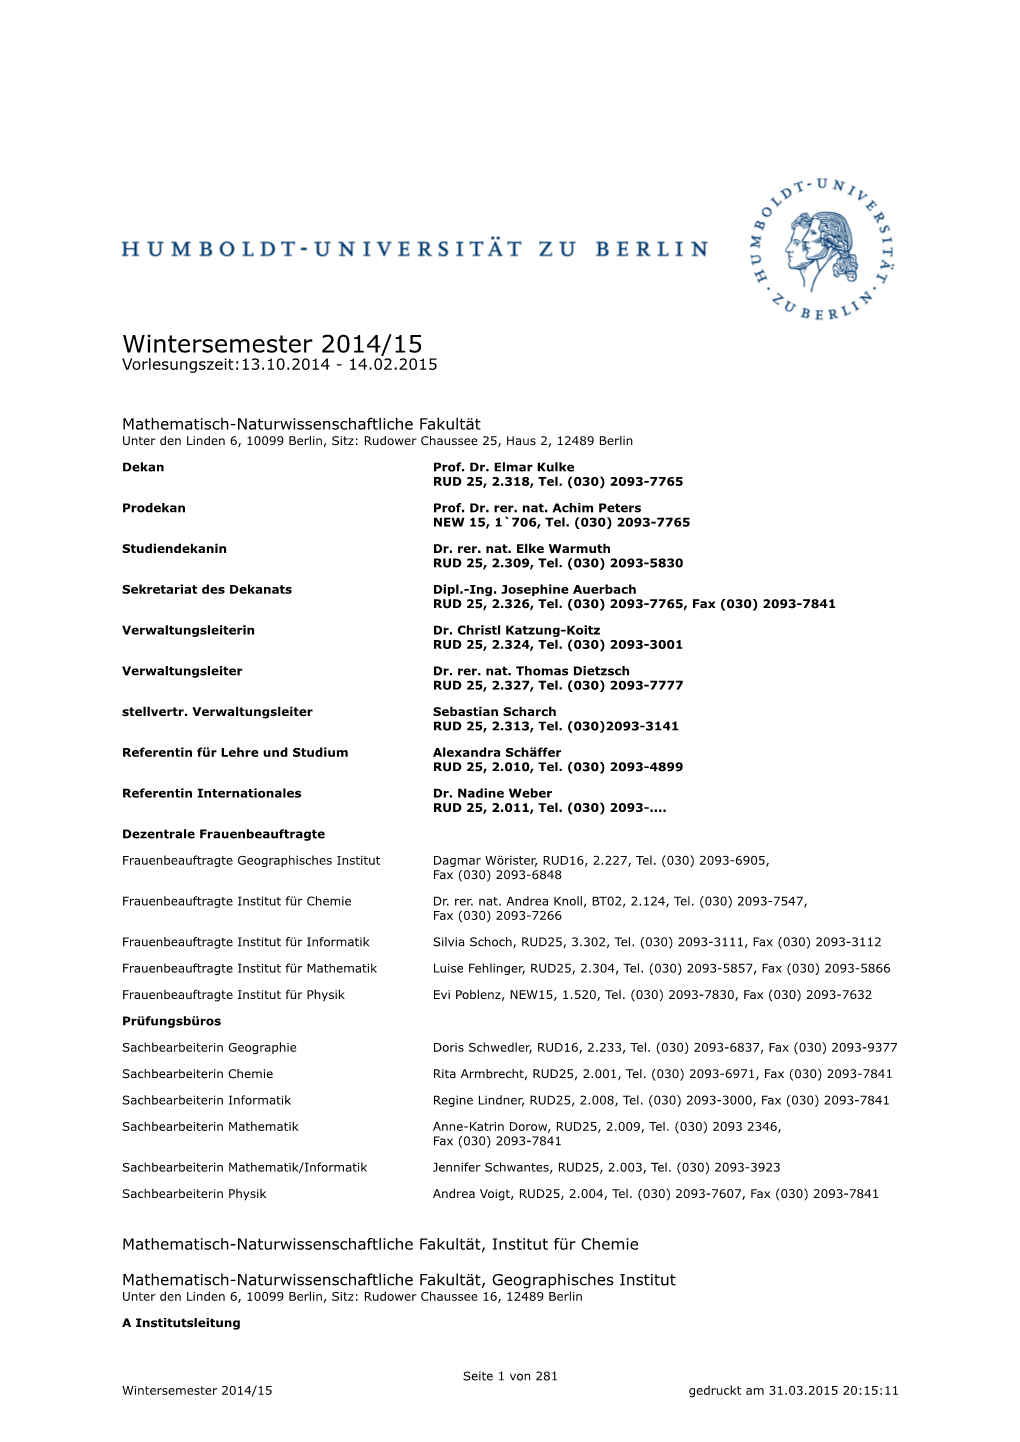 Wintersemester 2014/15 Vorlesungszeit:13.10.2014 - 14.02.2015